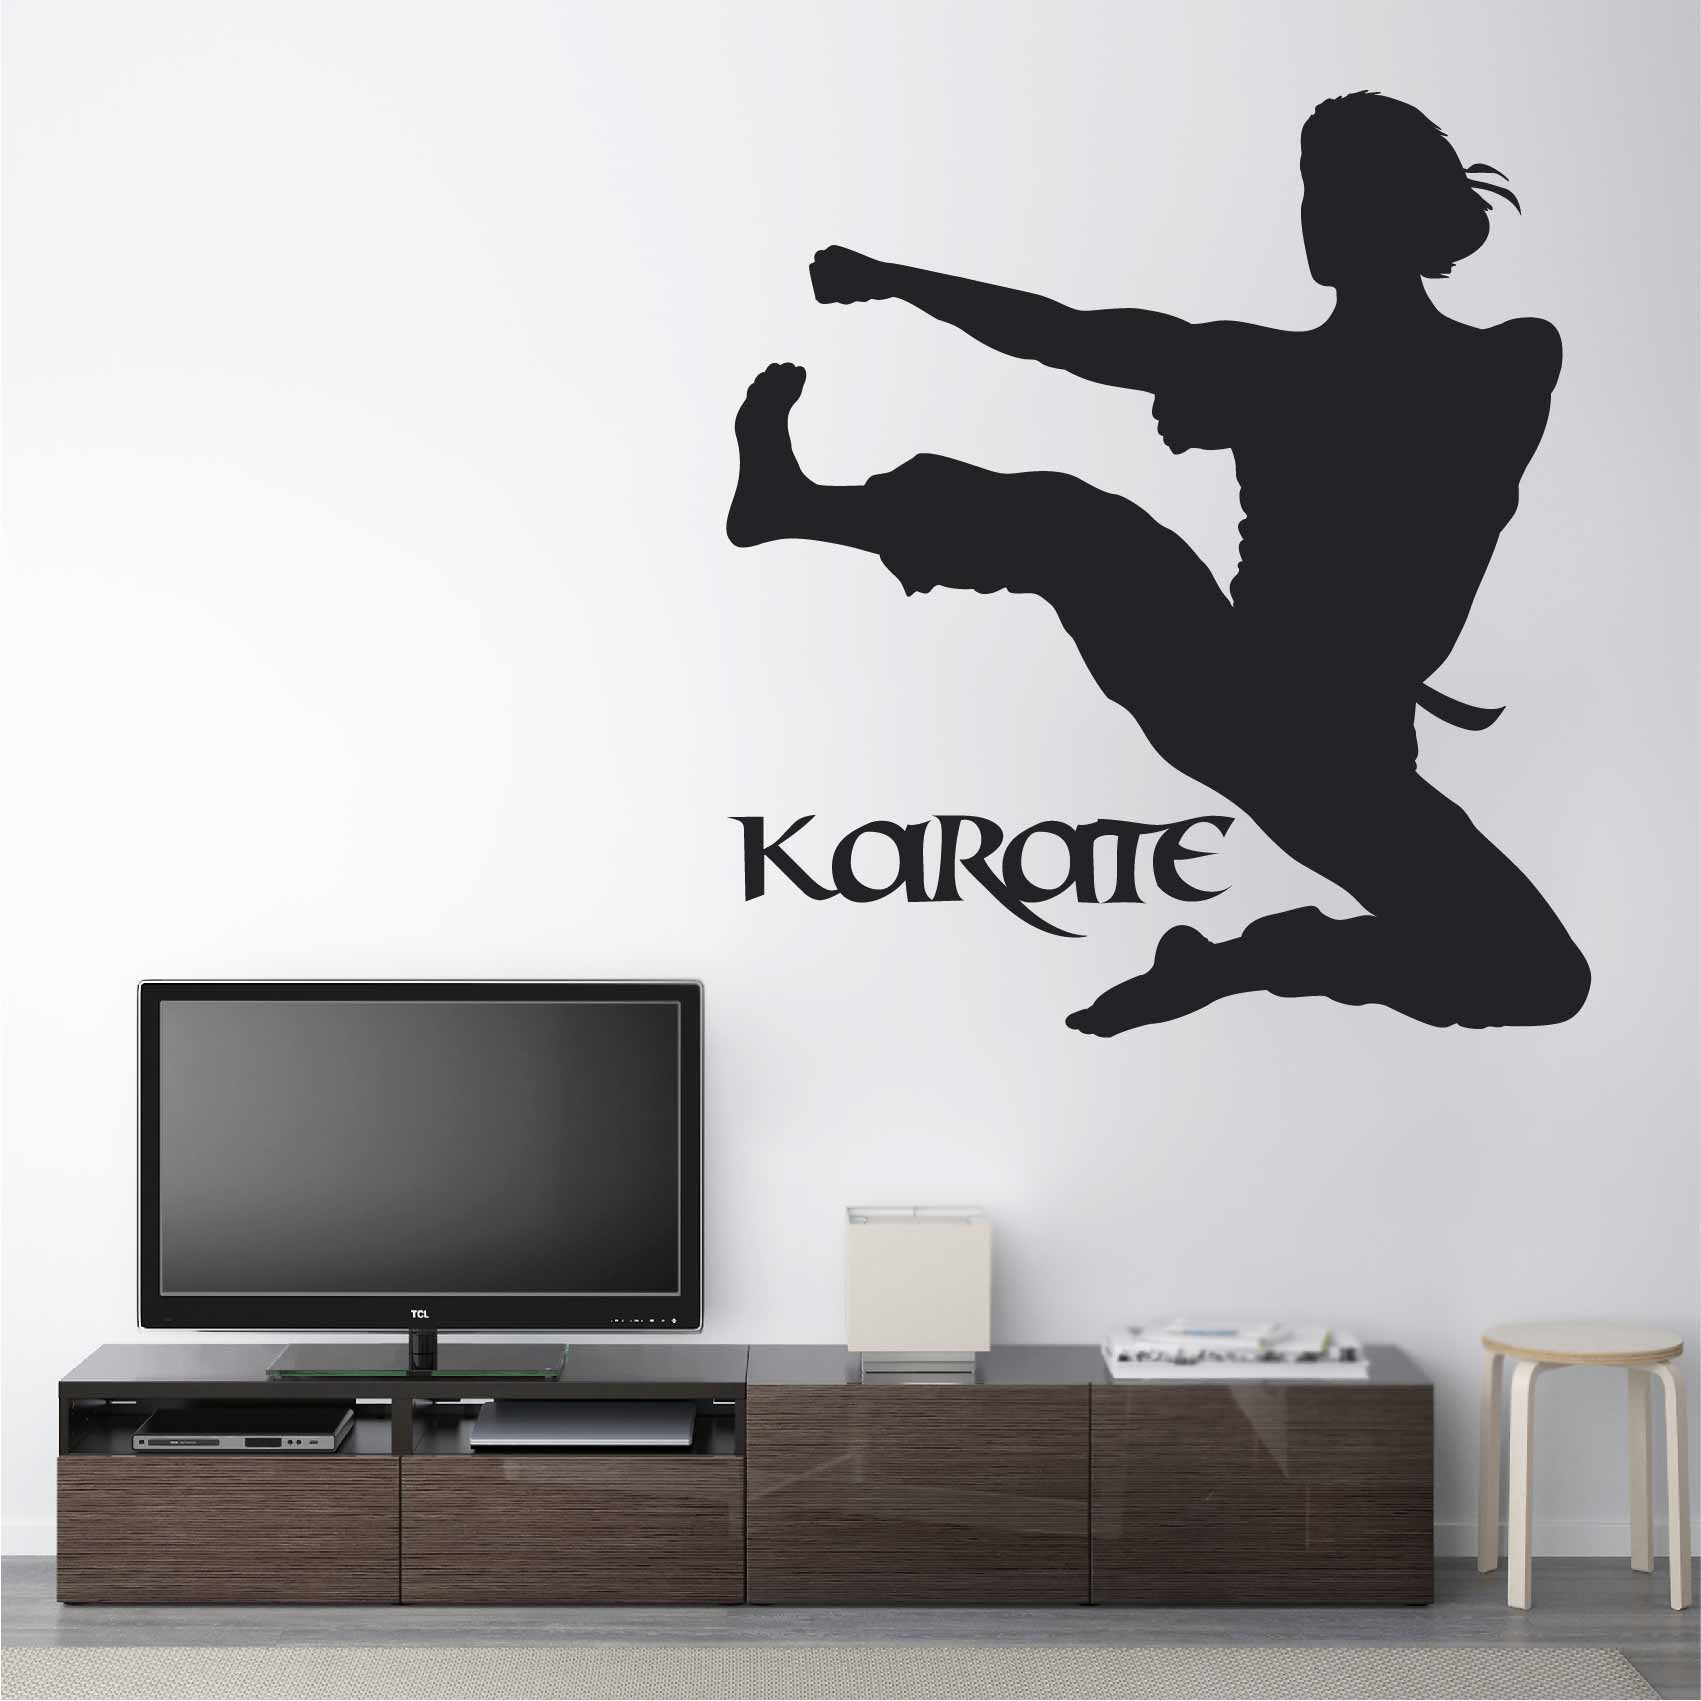 stickers-karaté-ref32sport-stickers-muraux-karate-autocollant-karaté-deco-chambre-enfant-salon-sticker-mural-sport